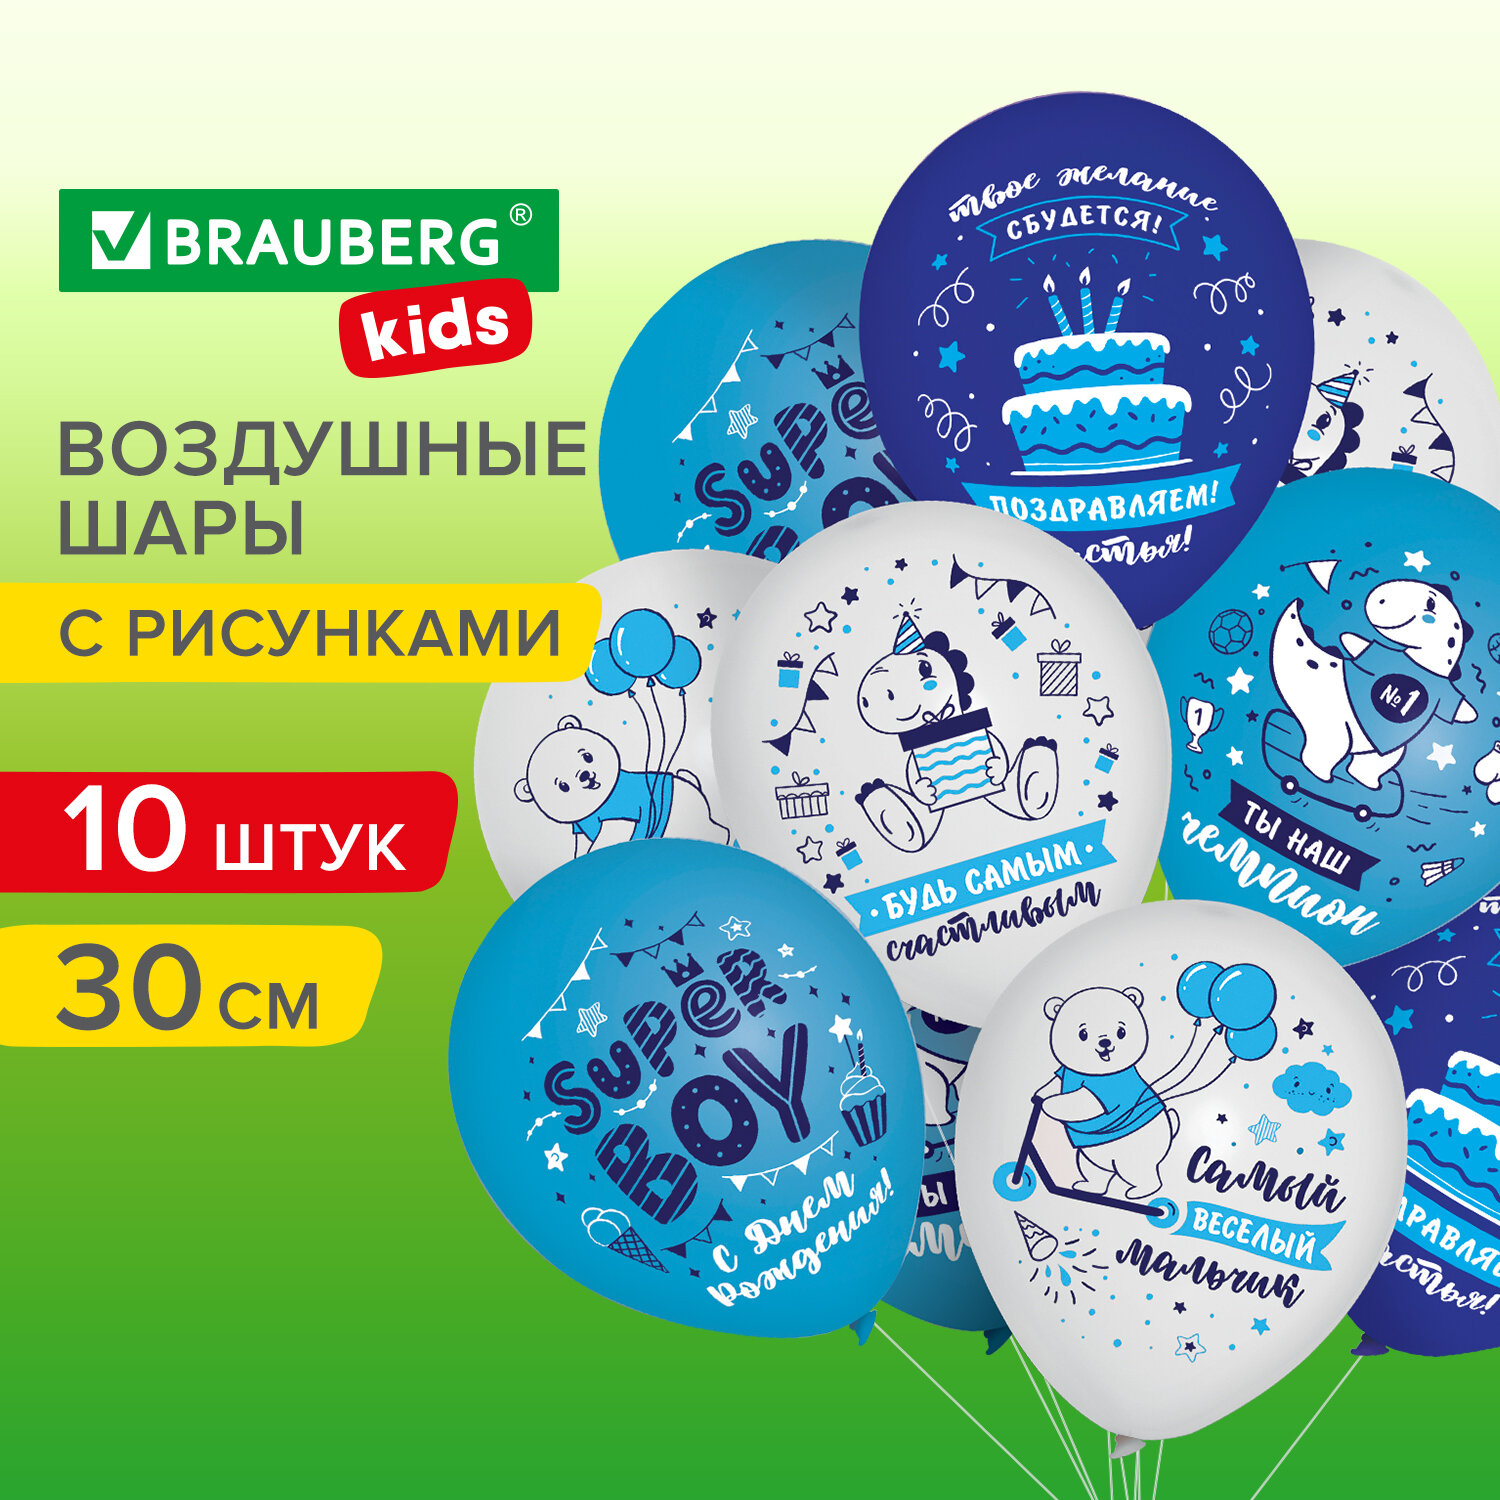 Шарики воздушные Brauberg Kids 591889 набор на день рождения мальчика, 10 шт, для фотозоны воздушные шары для фотозоны